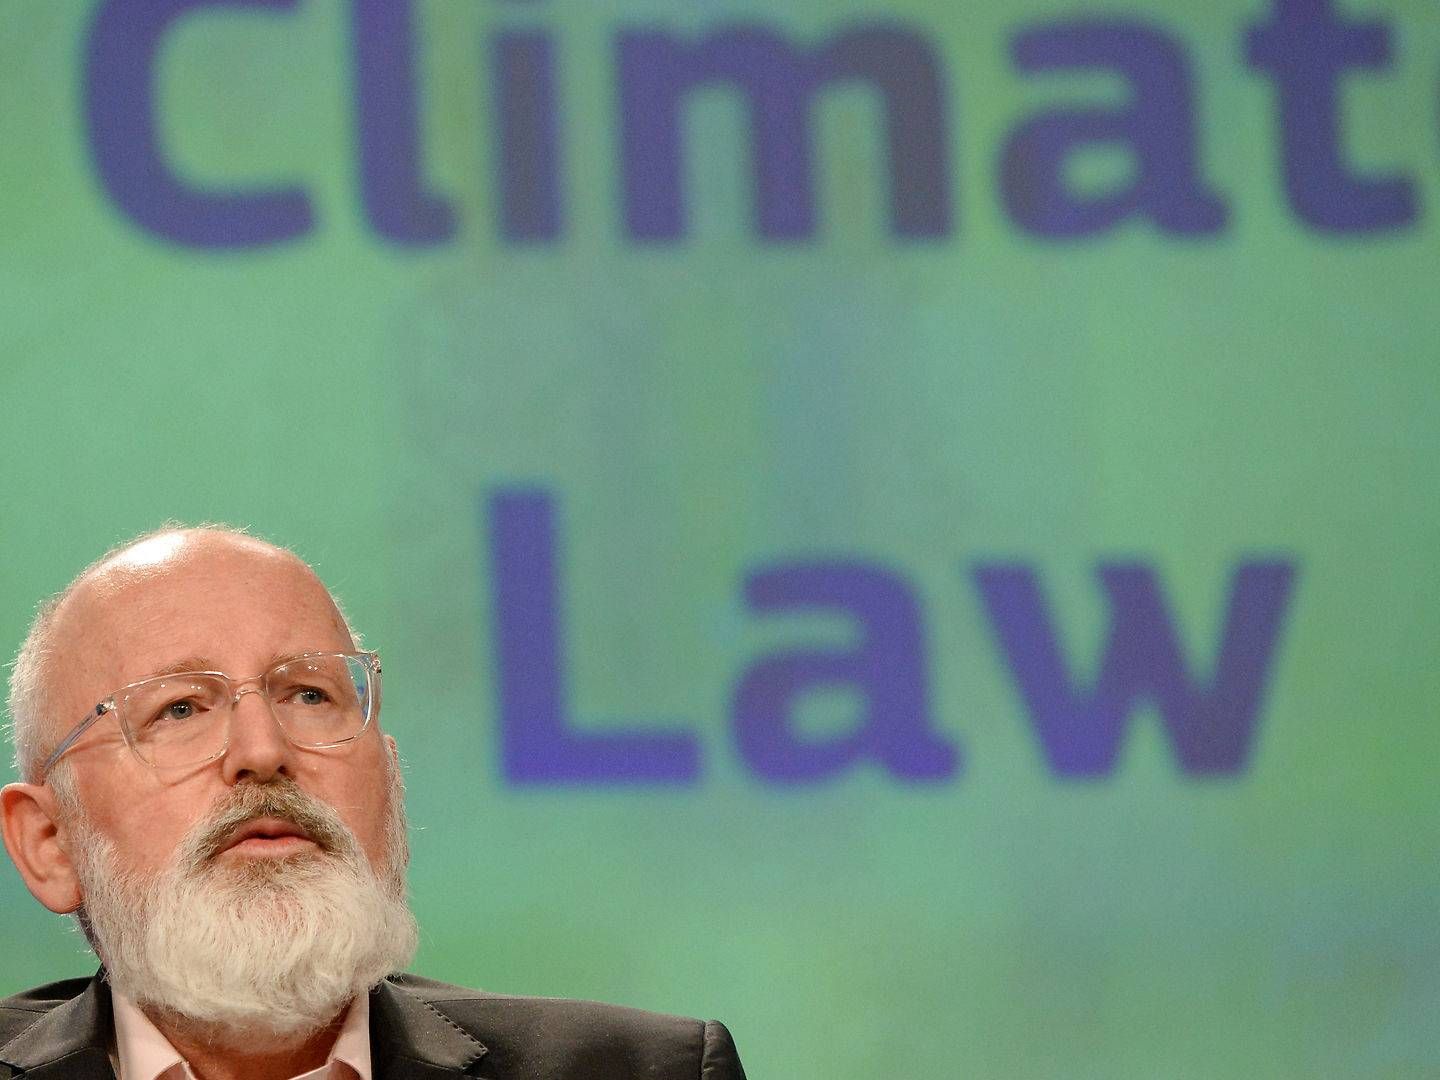 Det var EU-Kommissionens næstformand, Frans Timmermans, der fremlagde udkastet til klimaloven sidste år i marts. | Foto: Johanna Geron/Reuters/Ritzau Scanpix